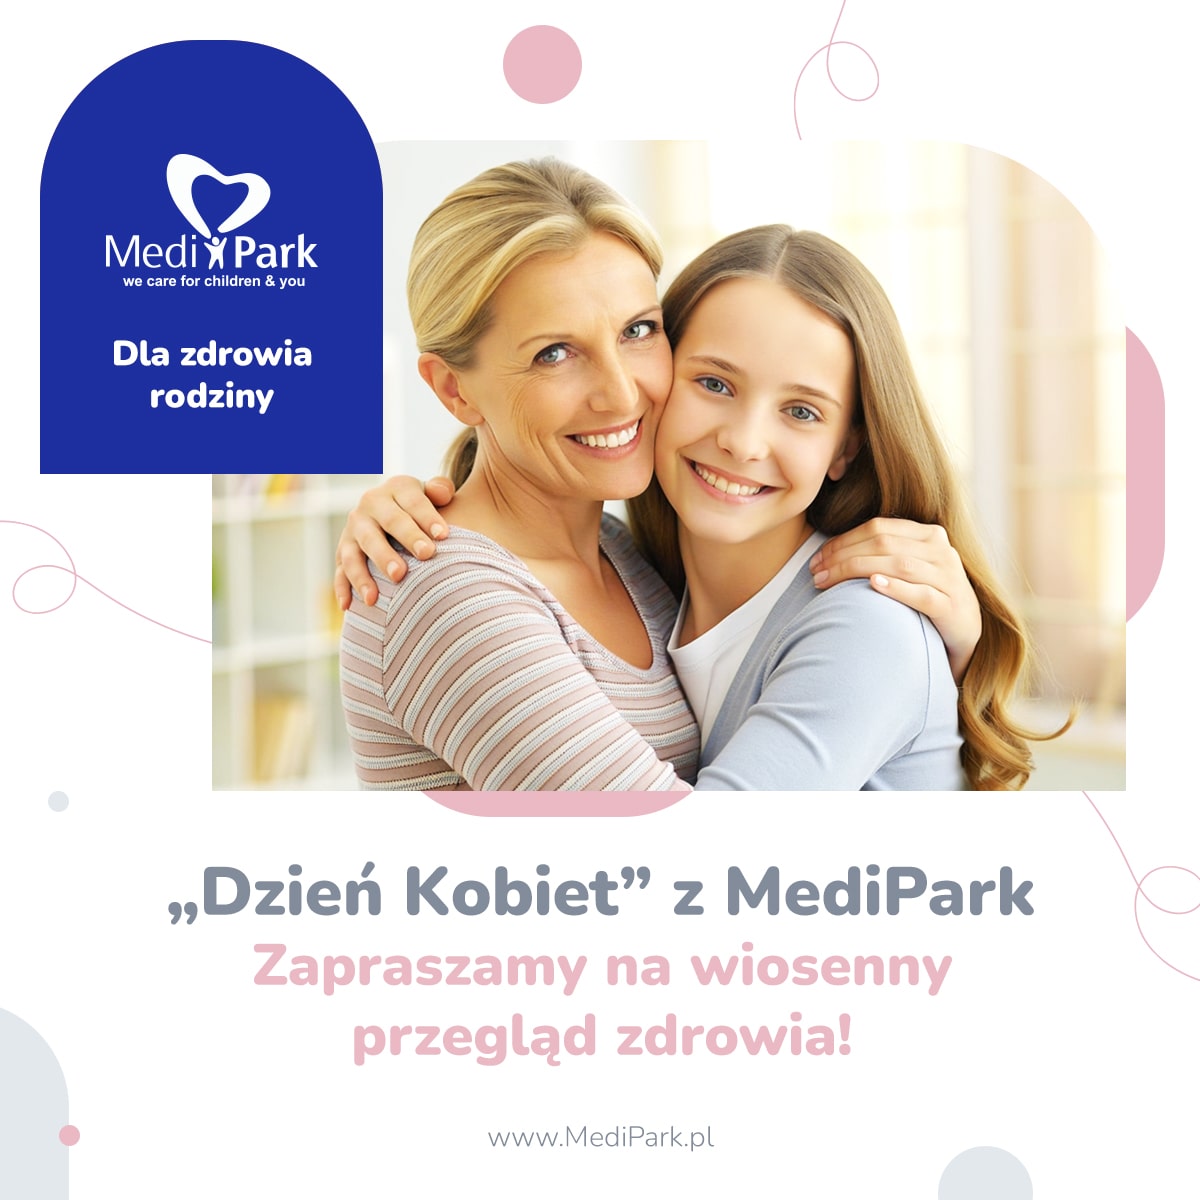 Social-Media-MediPark5-min.jpg